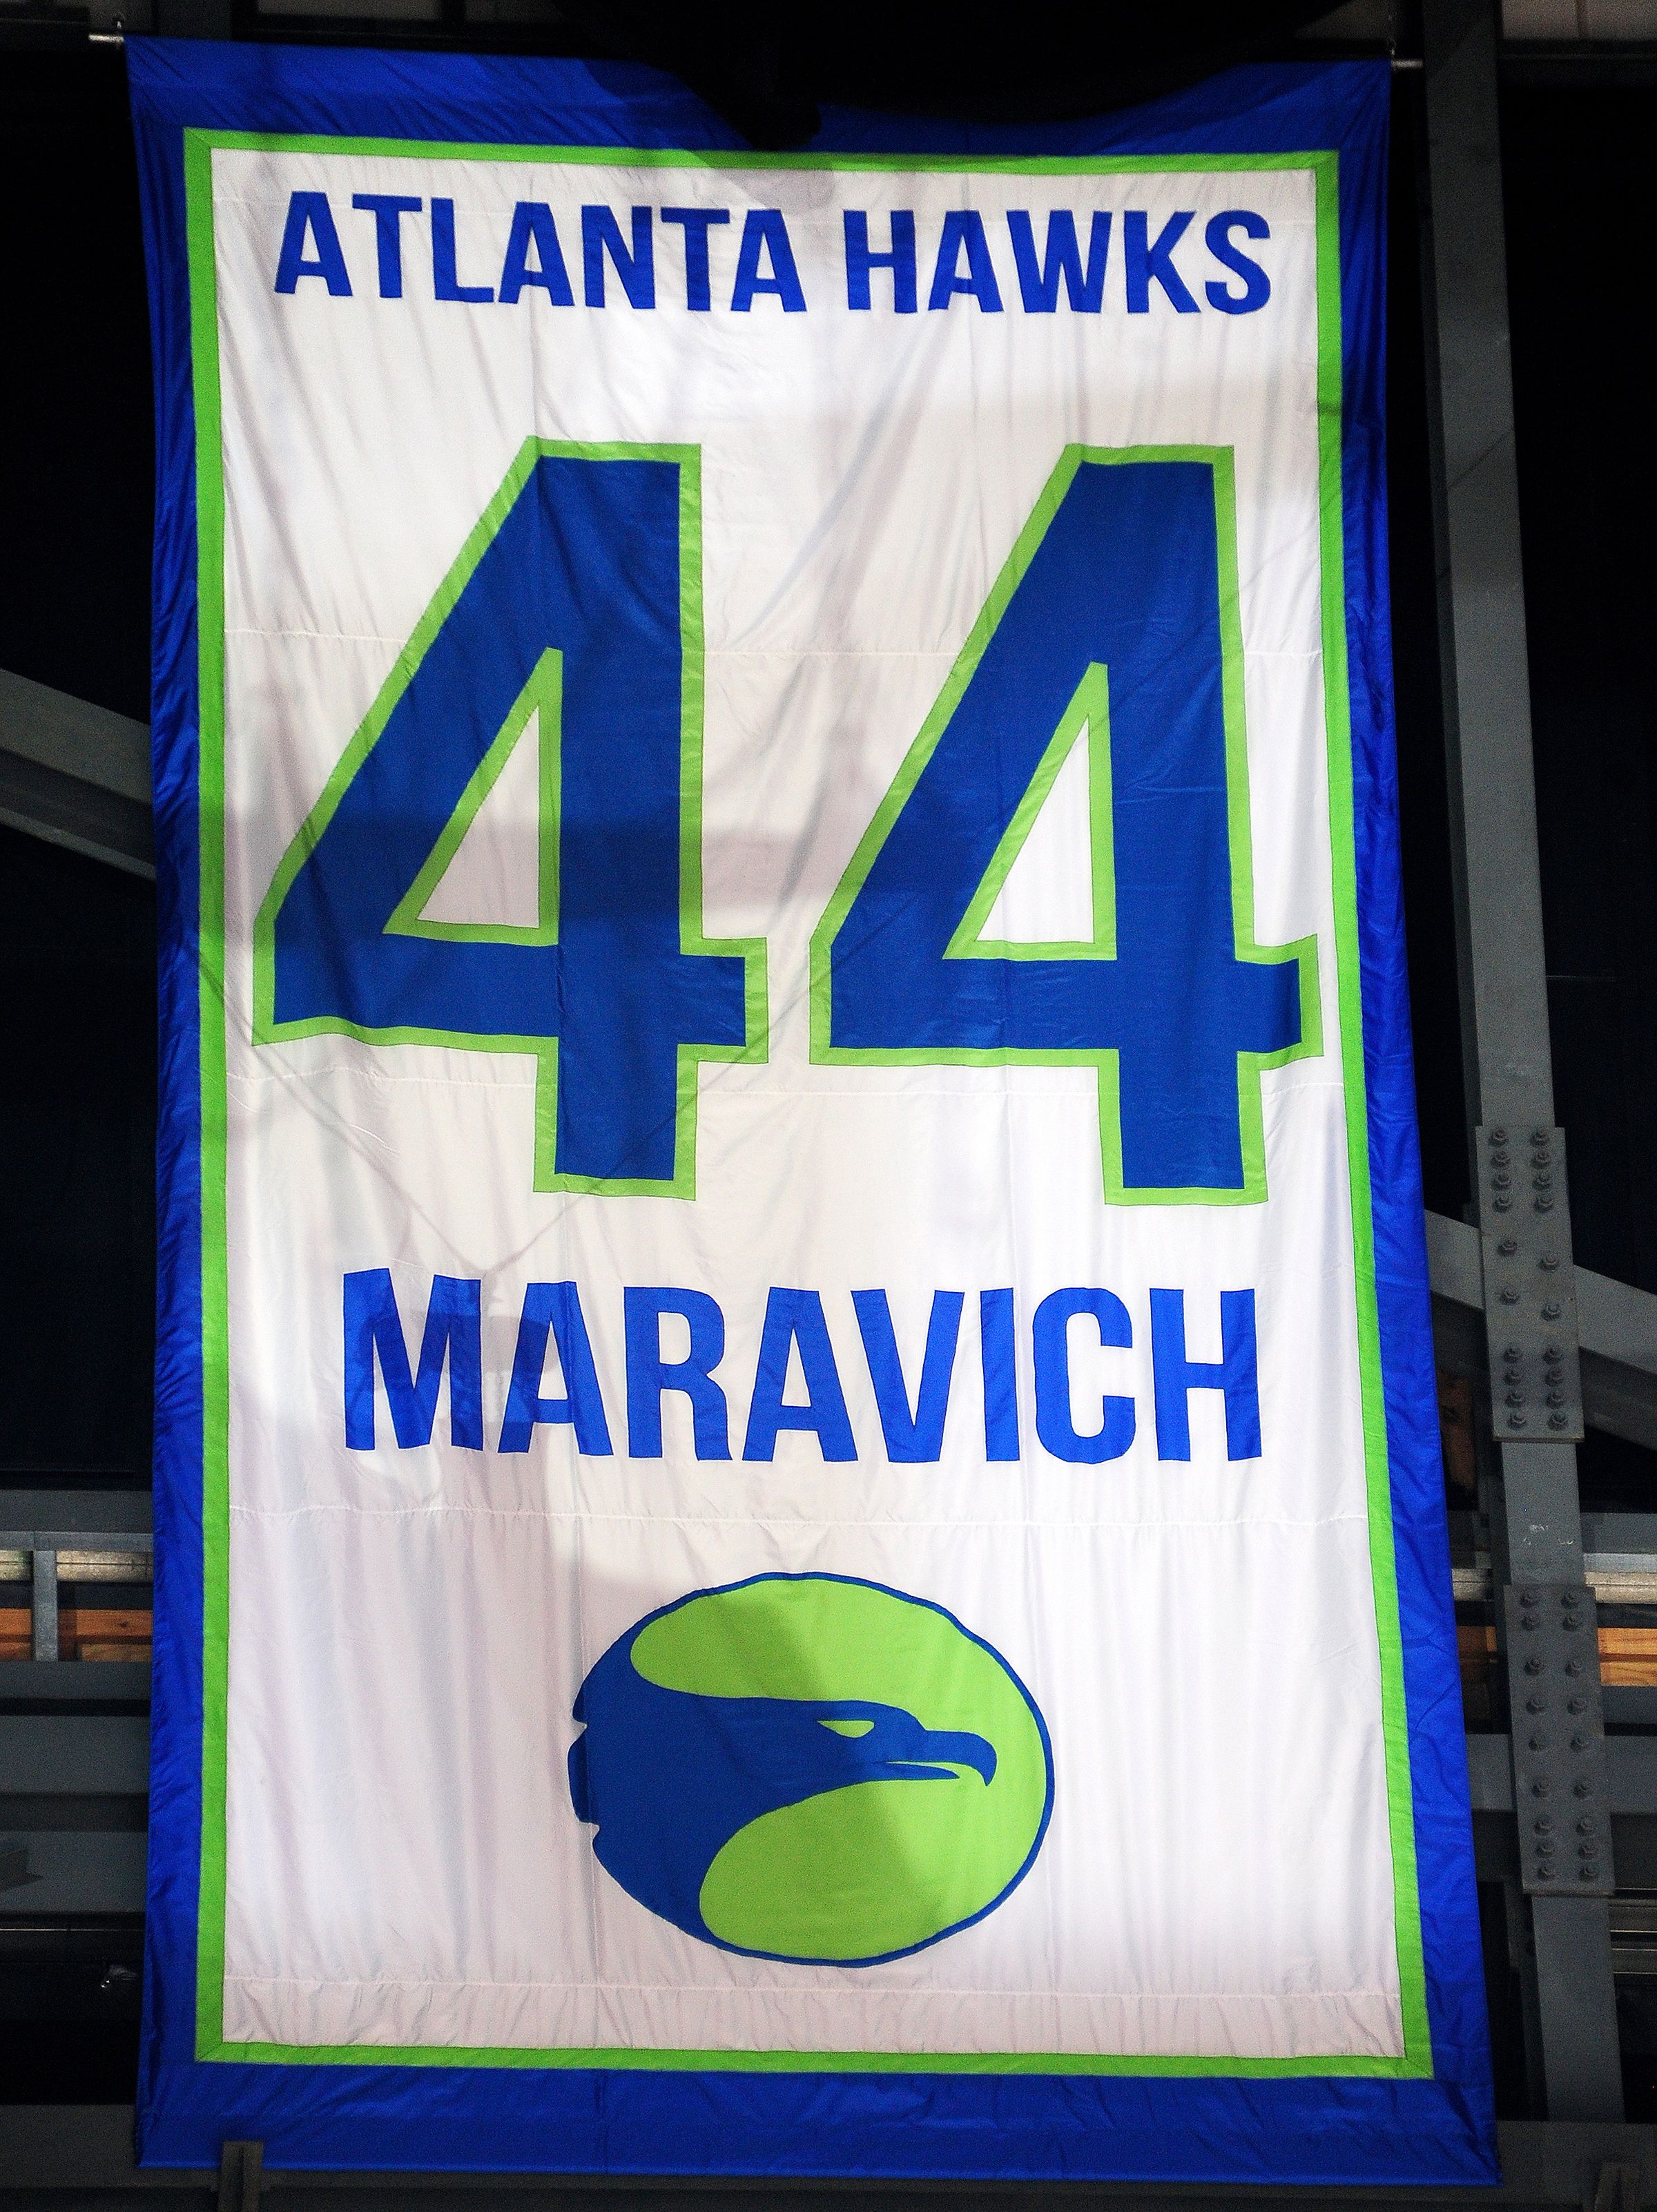 Atlanta Hawks to retire No. 44 of Pete Maravich